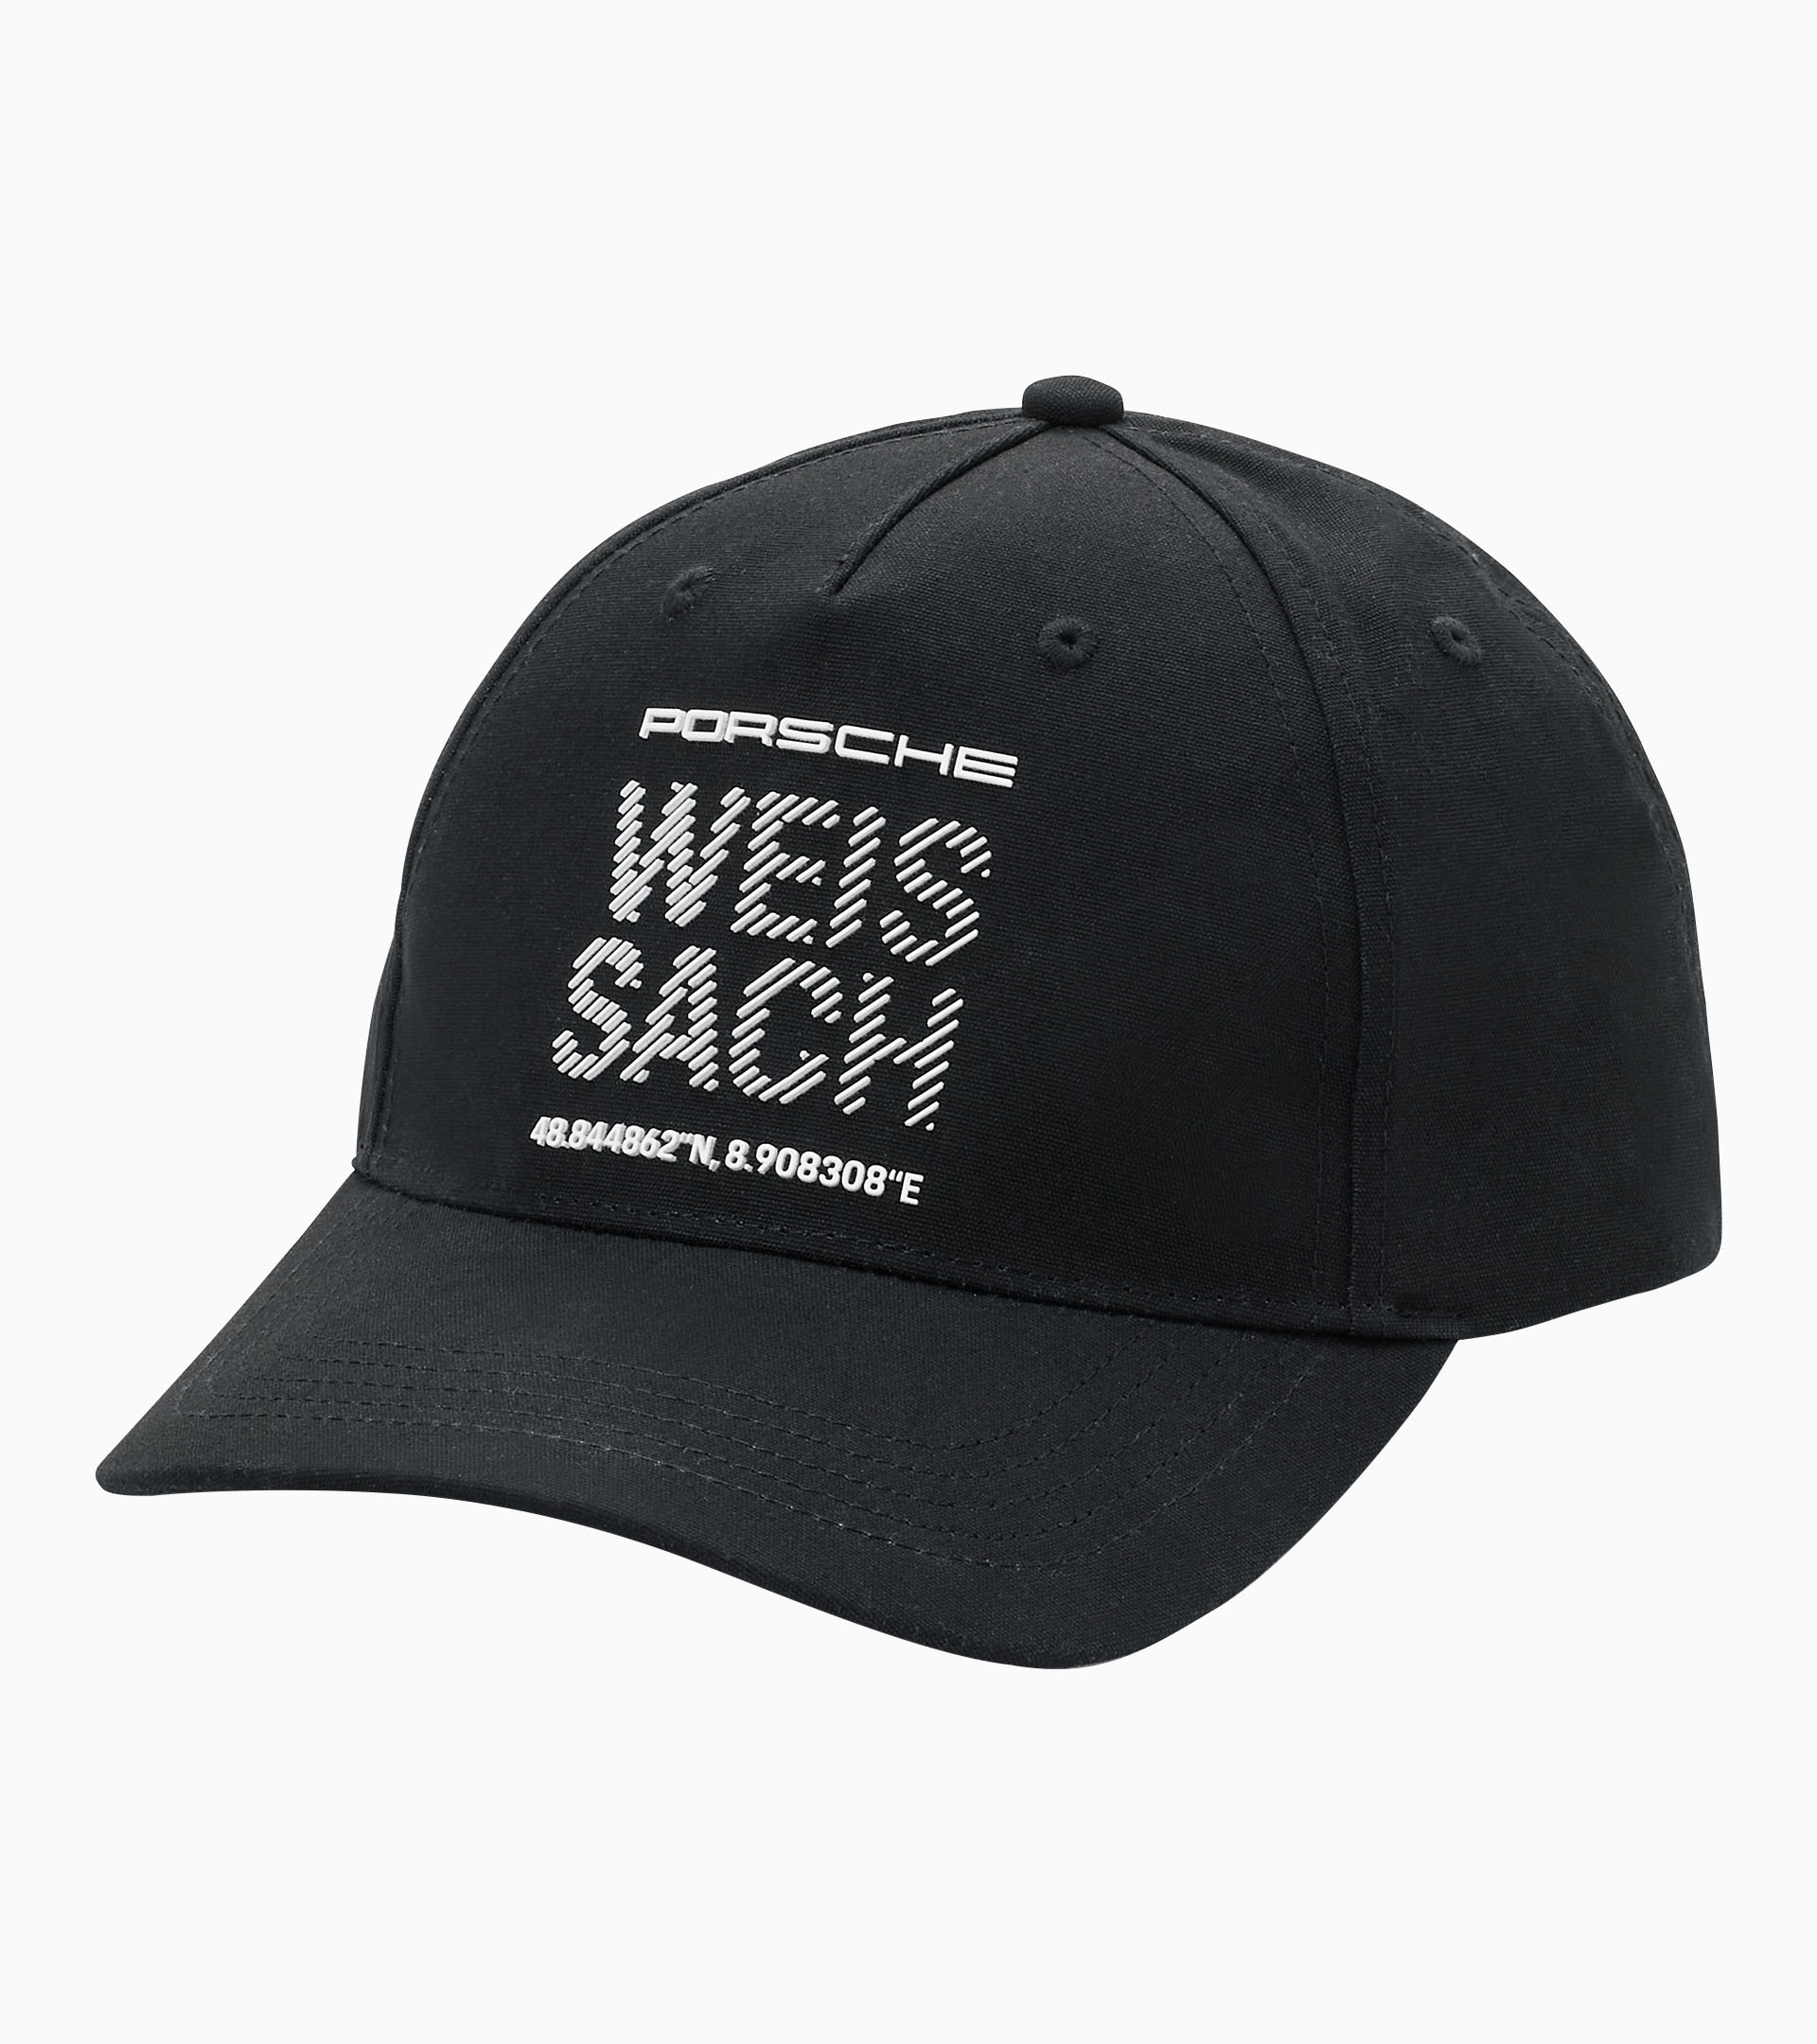 Weissach Hat - Essential Collection zoom